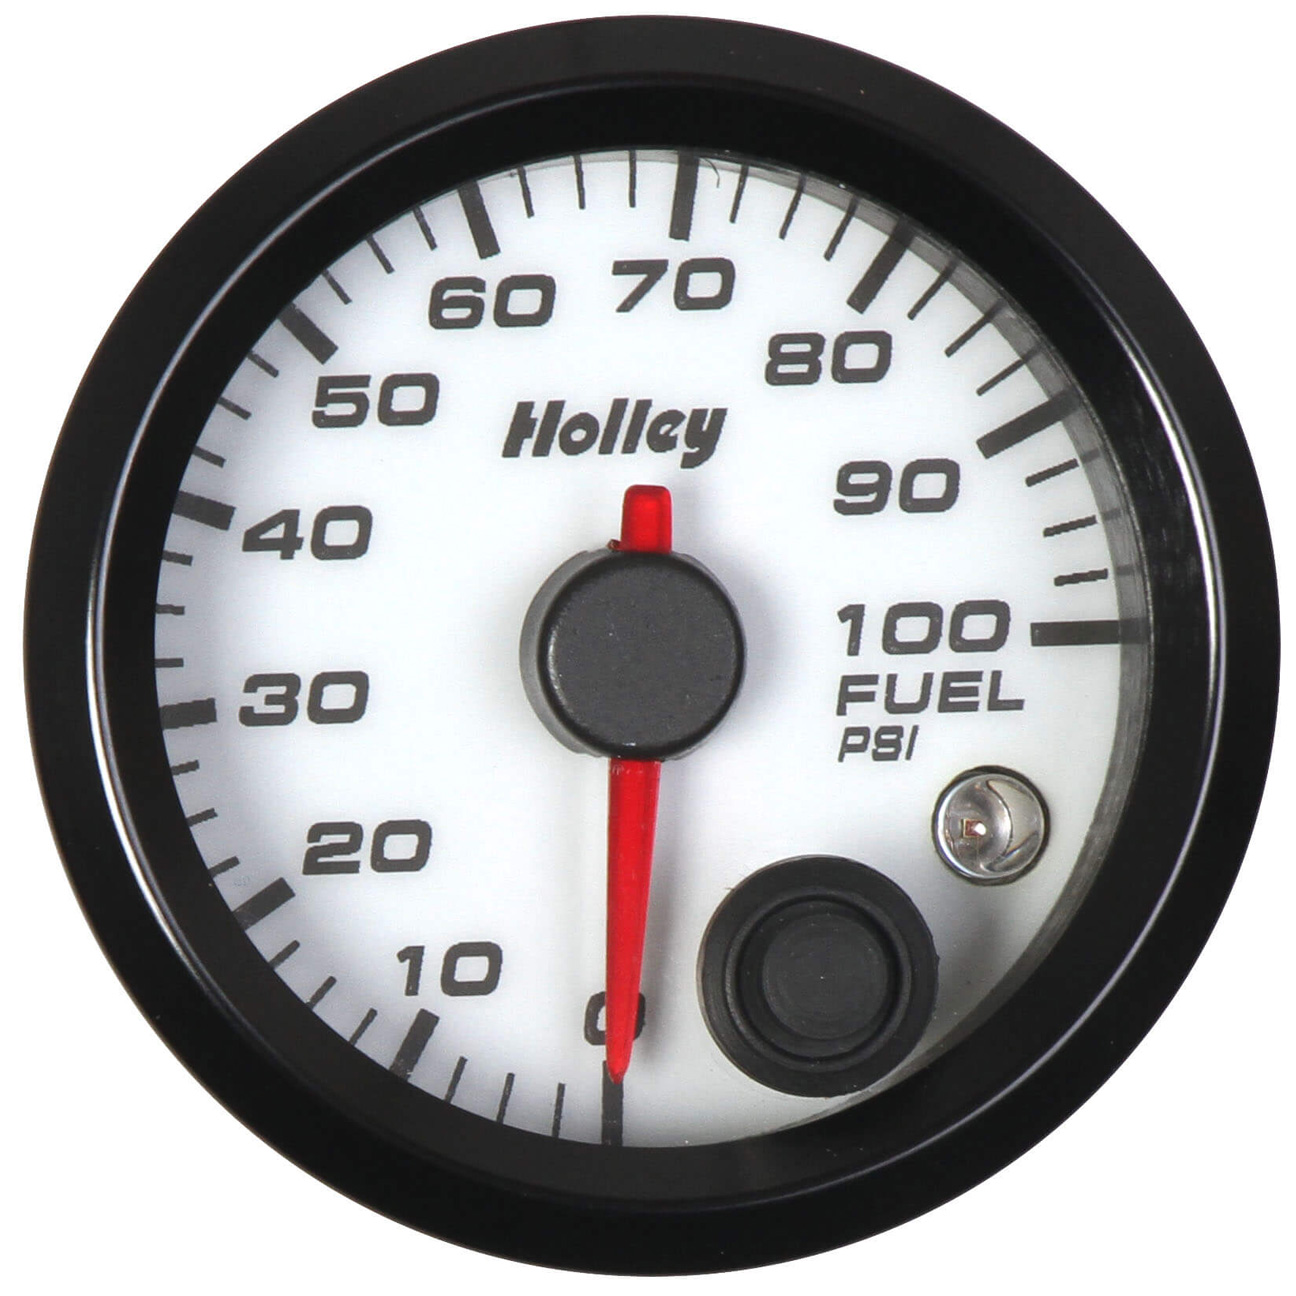 Analog-Style Fuel Pressure Gauge